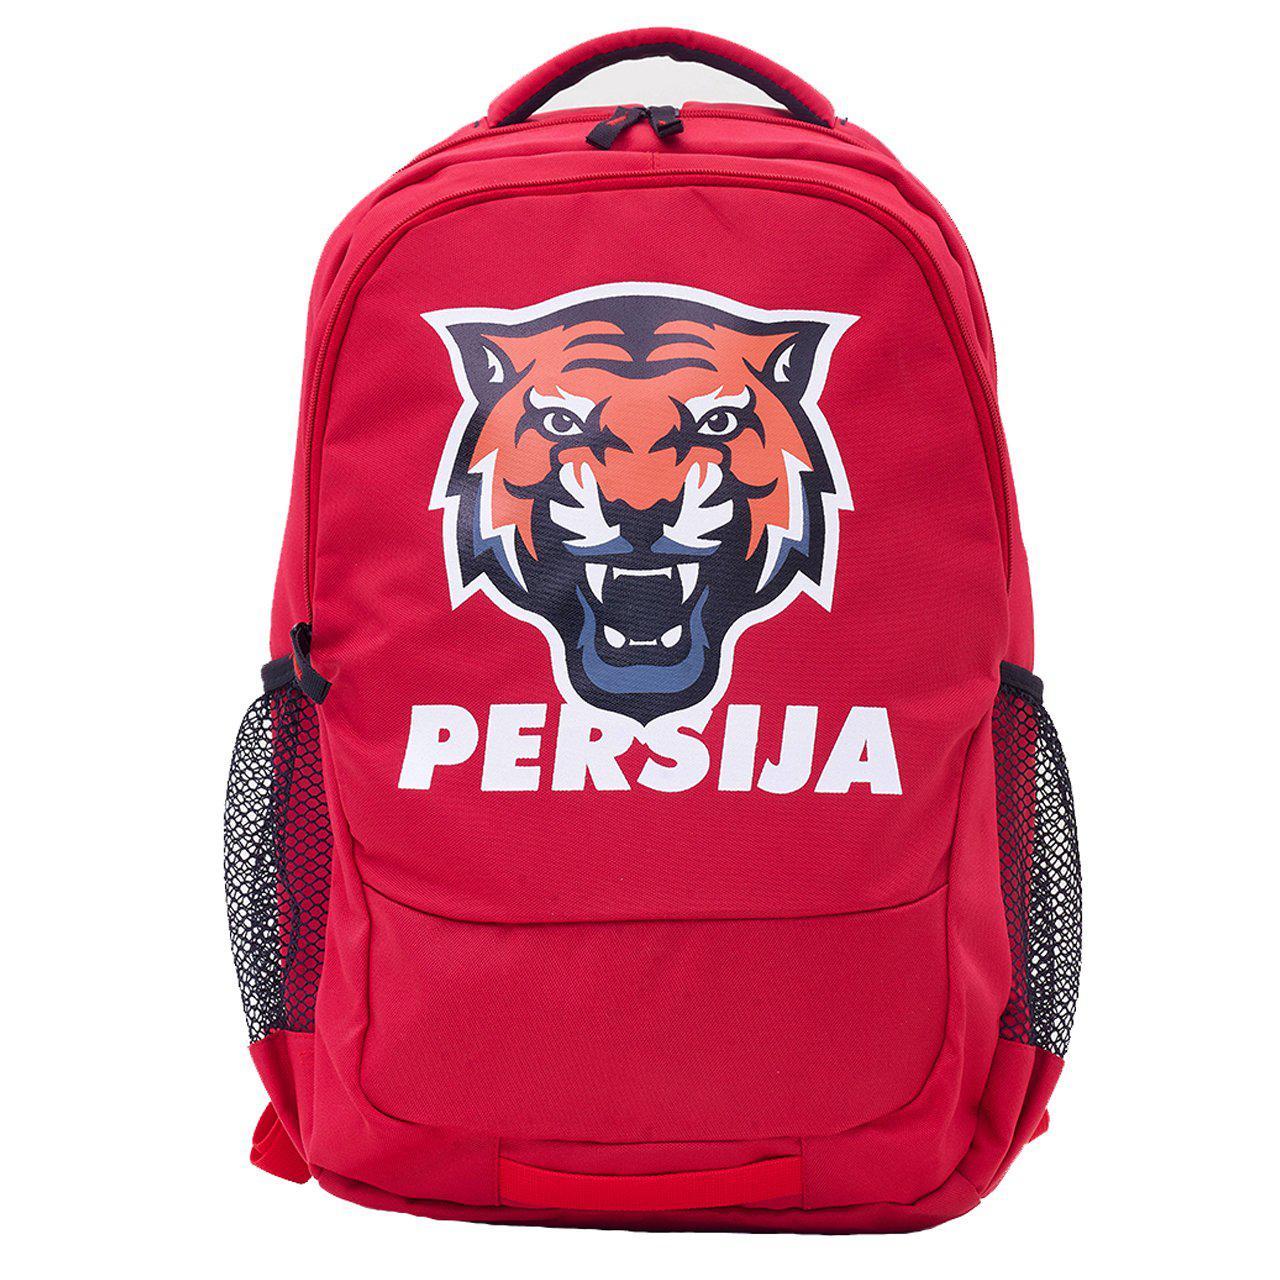 Juaraga Persija Ransel Backpack - Logo Macan - Merah juaraga.id